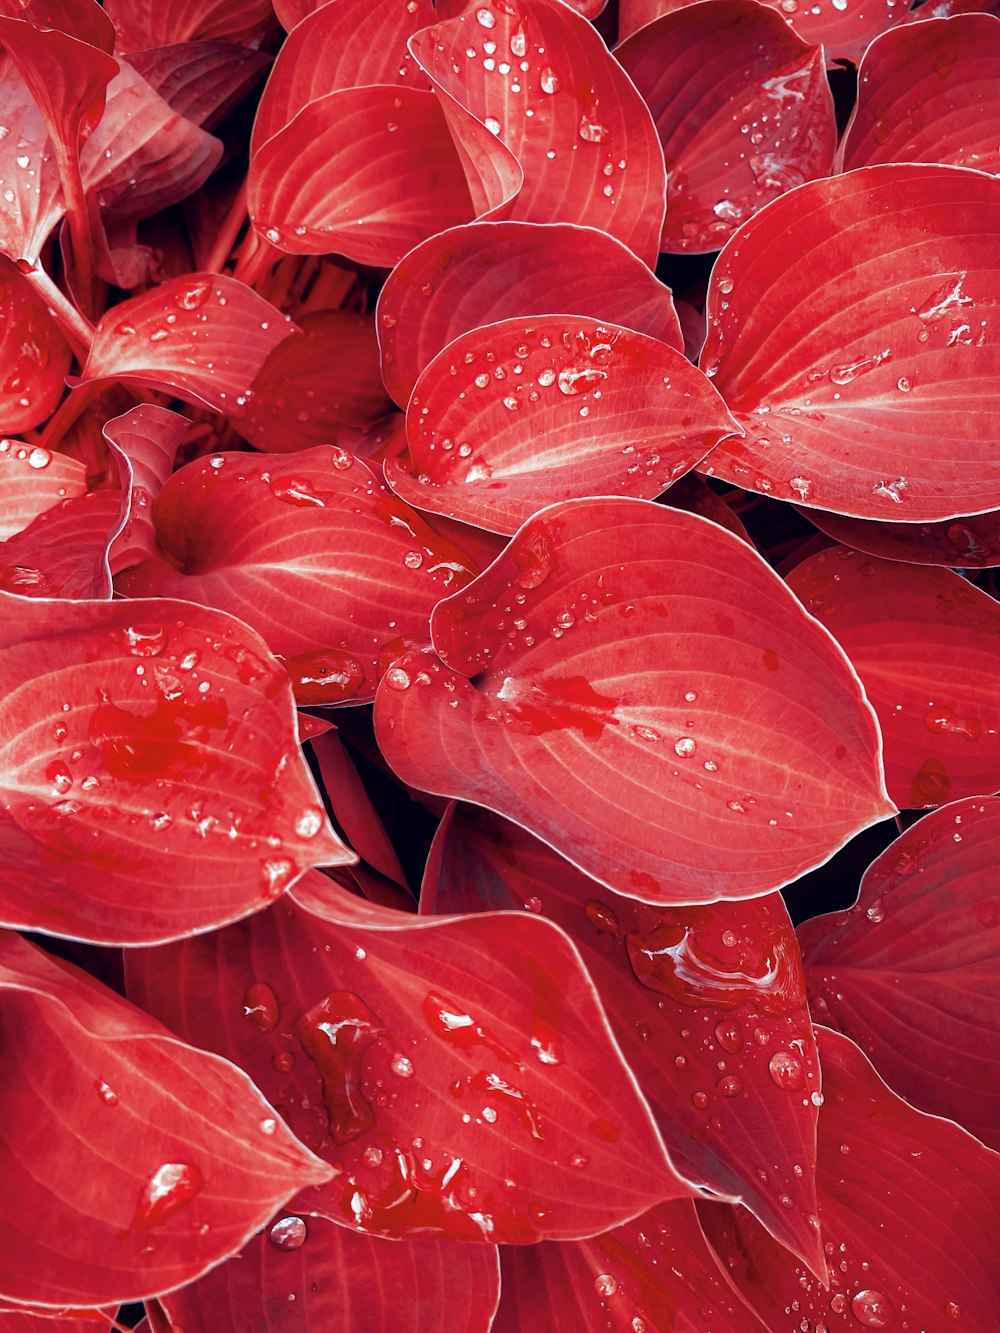 um ramo de flores vermelhas com gotículas de água sobre elas